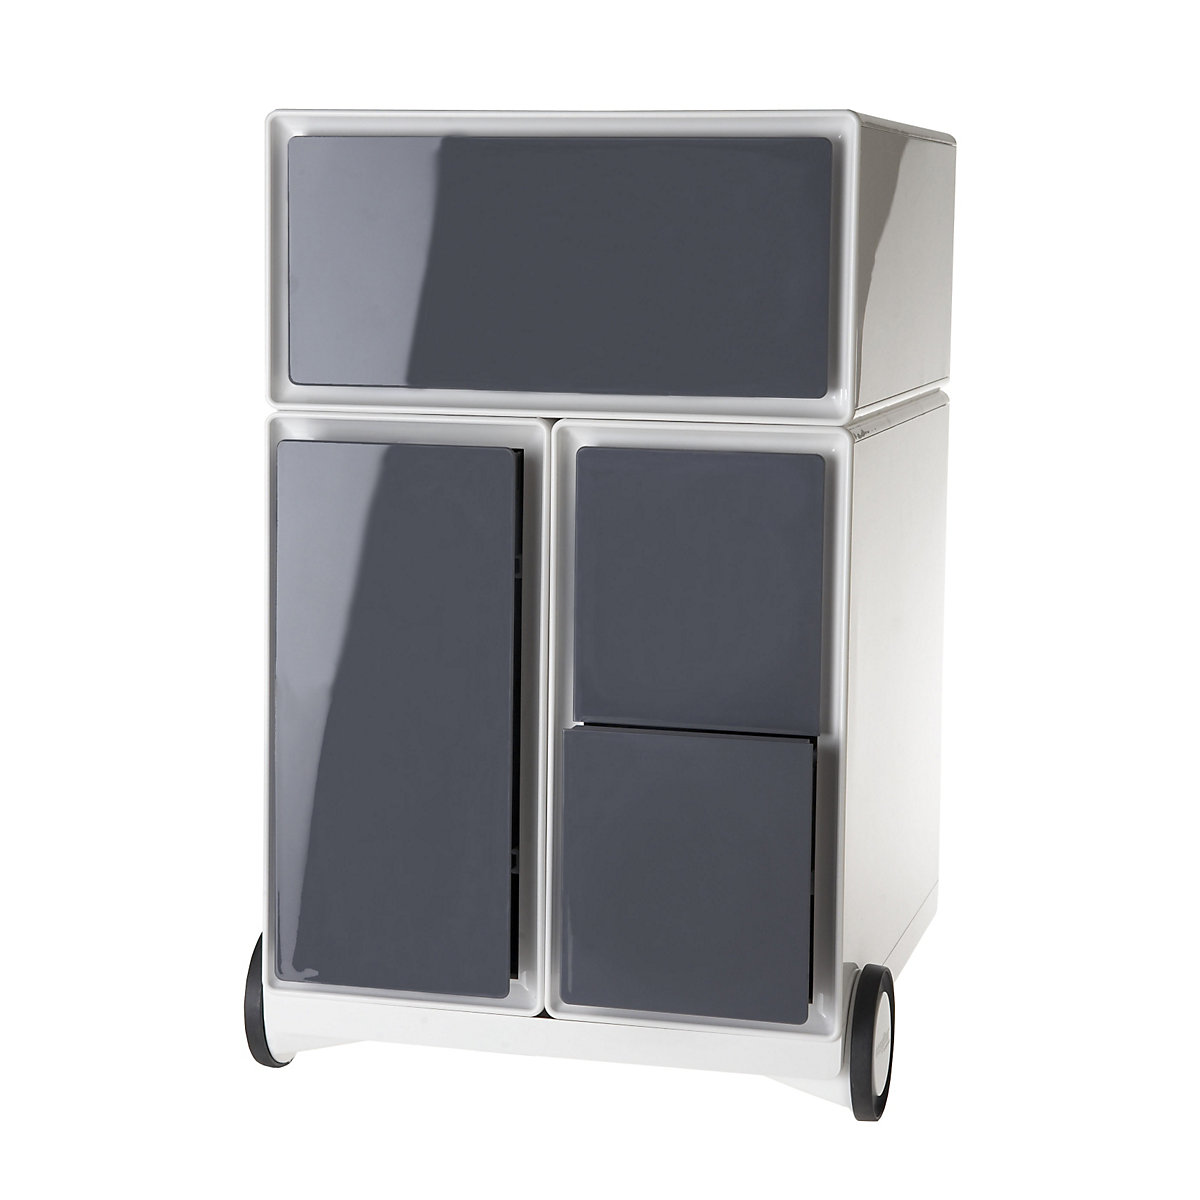 Pojízdný kontejner easyBox® – Paperflow, 1 zásuvka, 1 výsuv pro závěsné složky, 2 výsuvy pro CD, bílá / antracitová-11